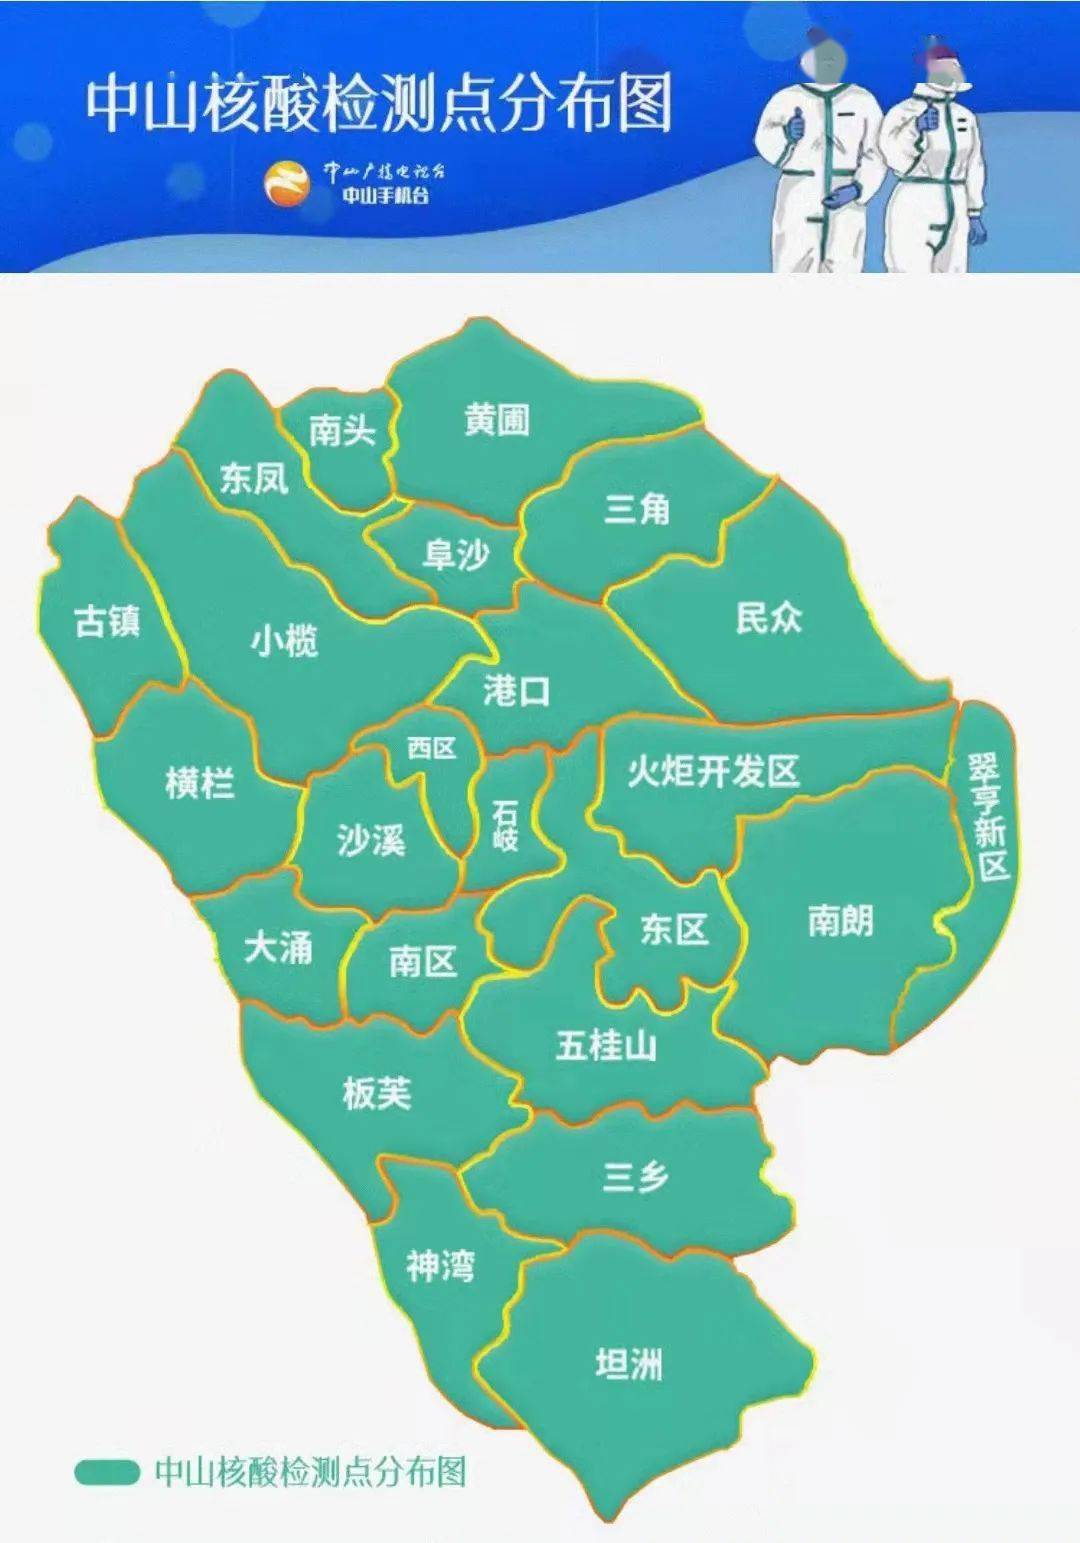 中山市镇区地图图片